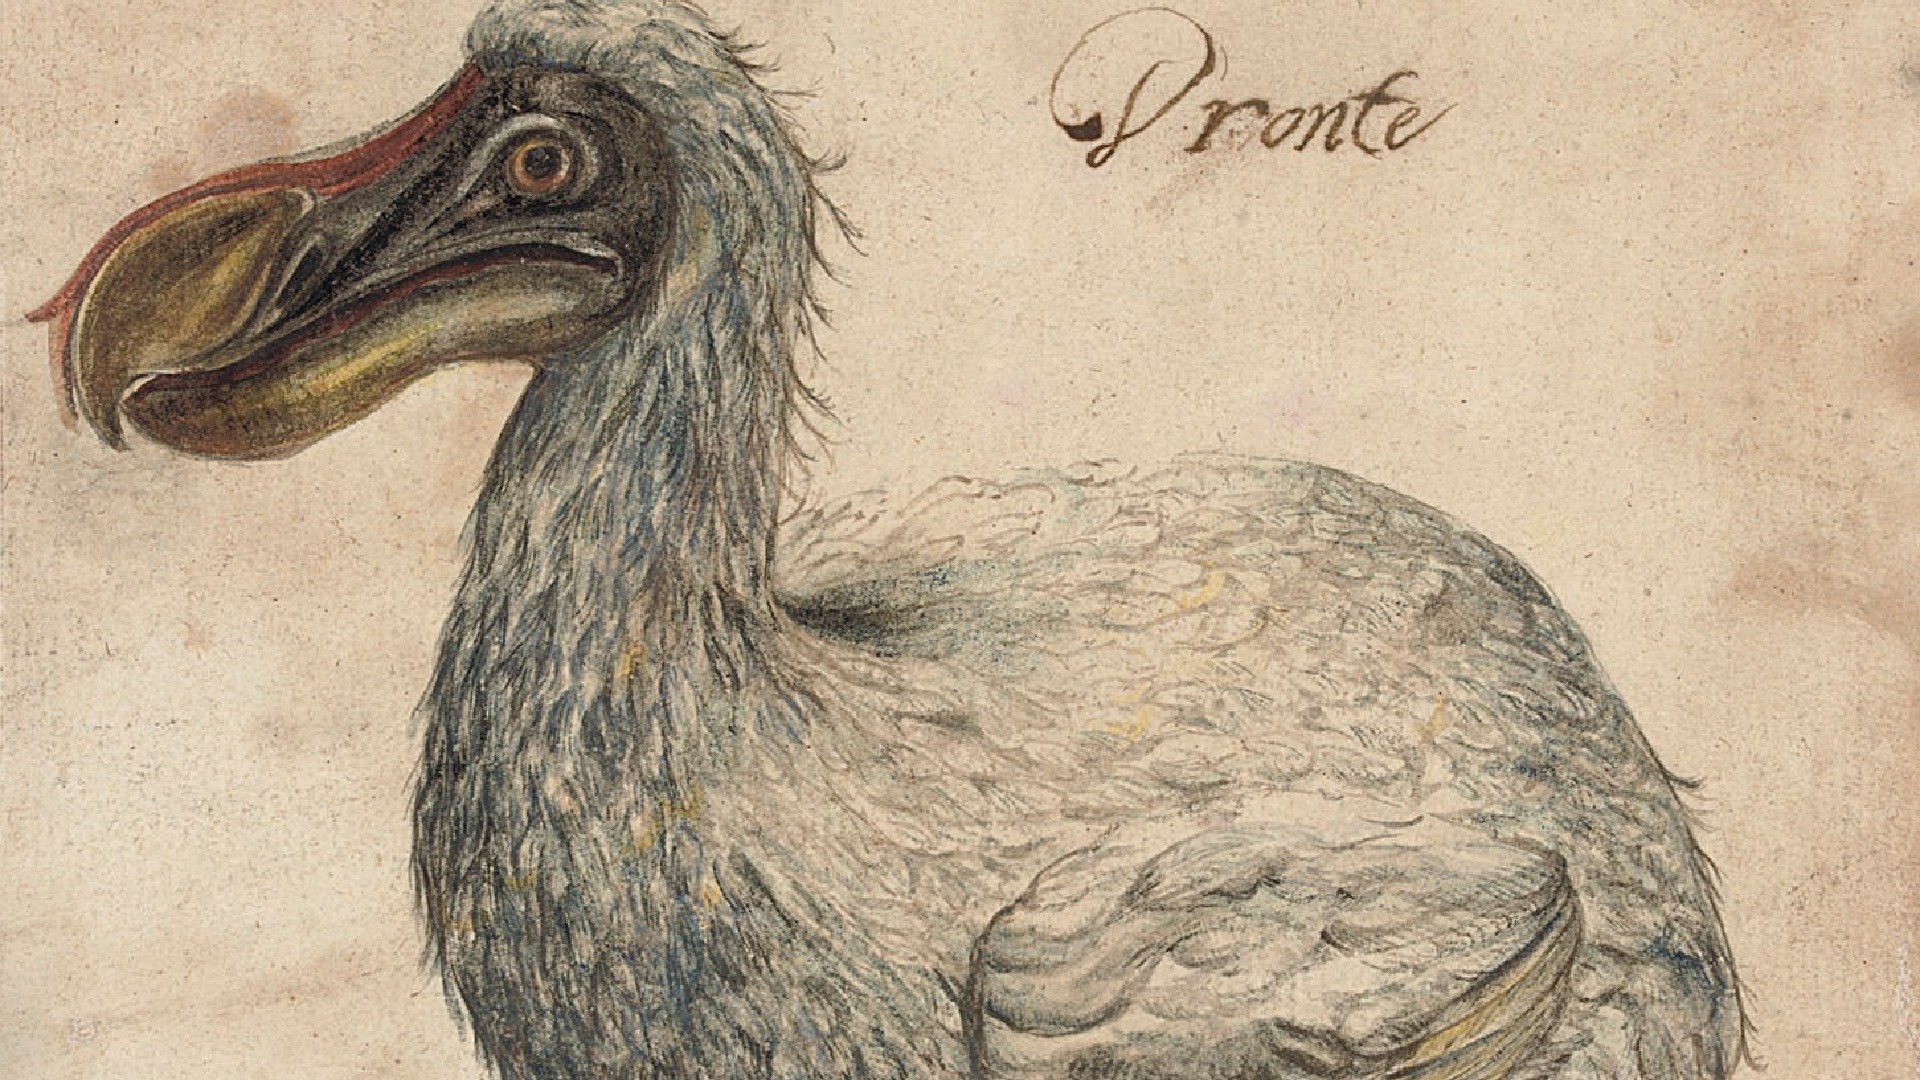 Птица Додо изображения 17 века